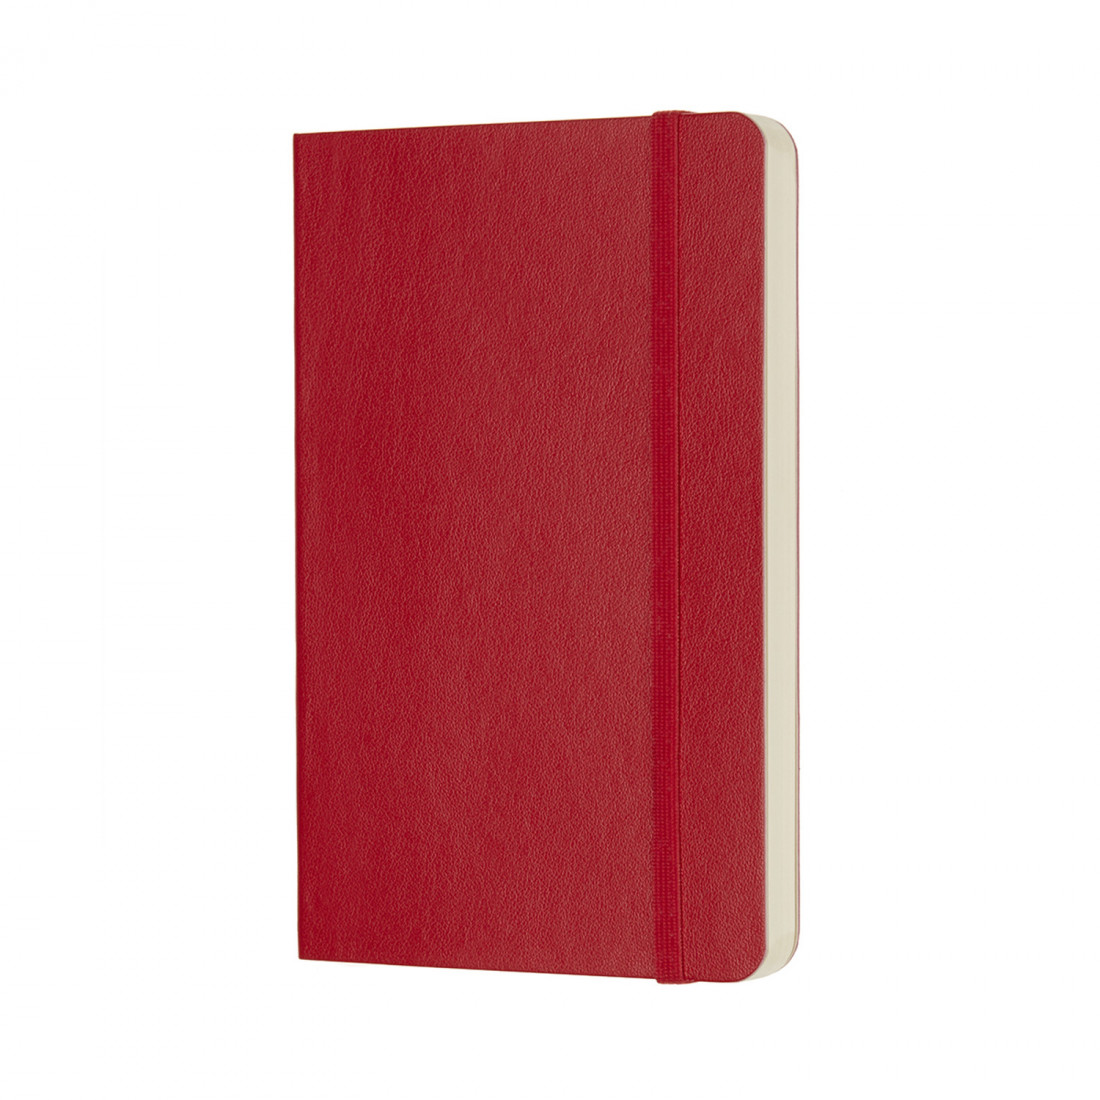 Notebook Pocket 9x14 Plain Scarlet Red Soft Cover Moleskine